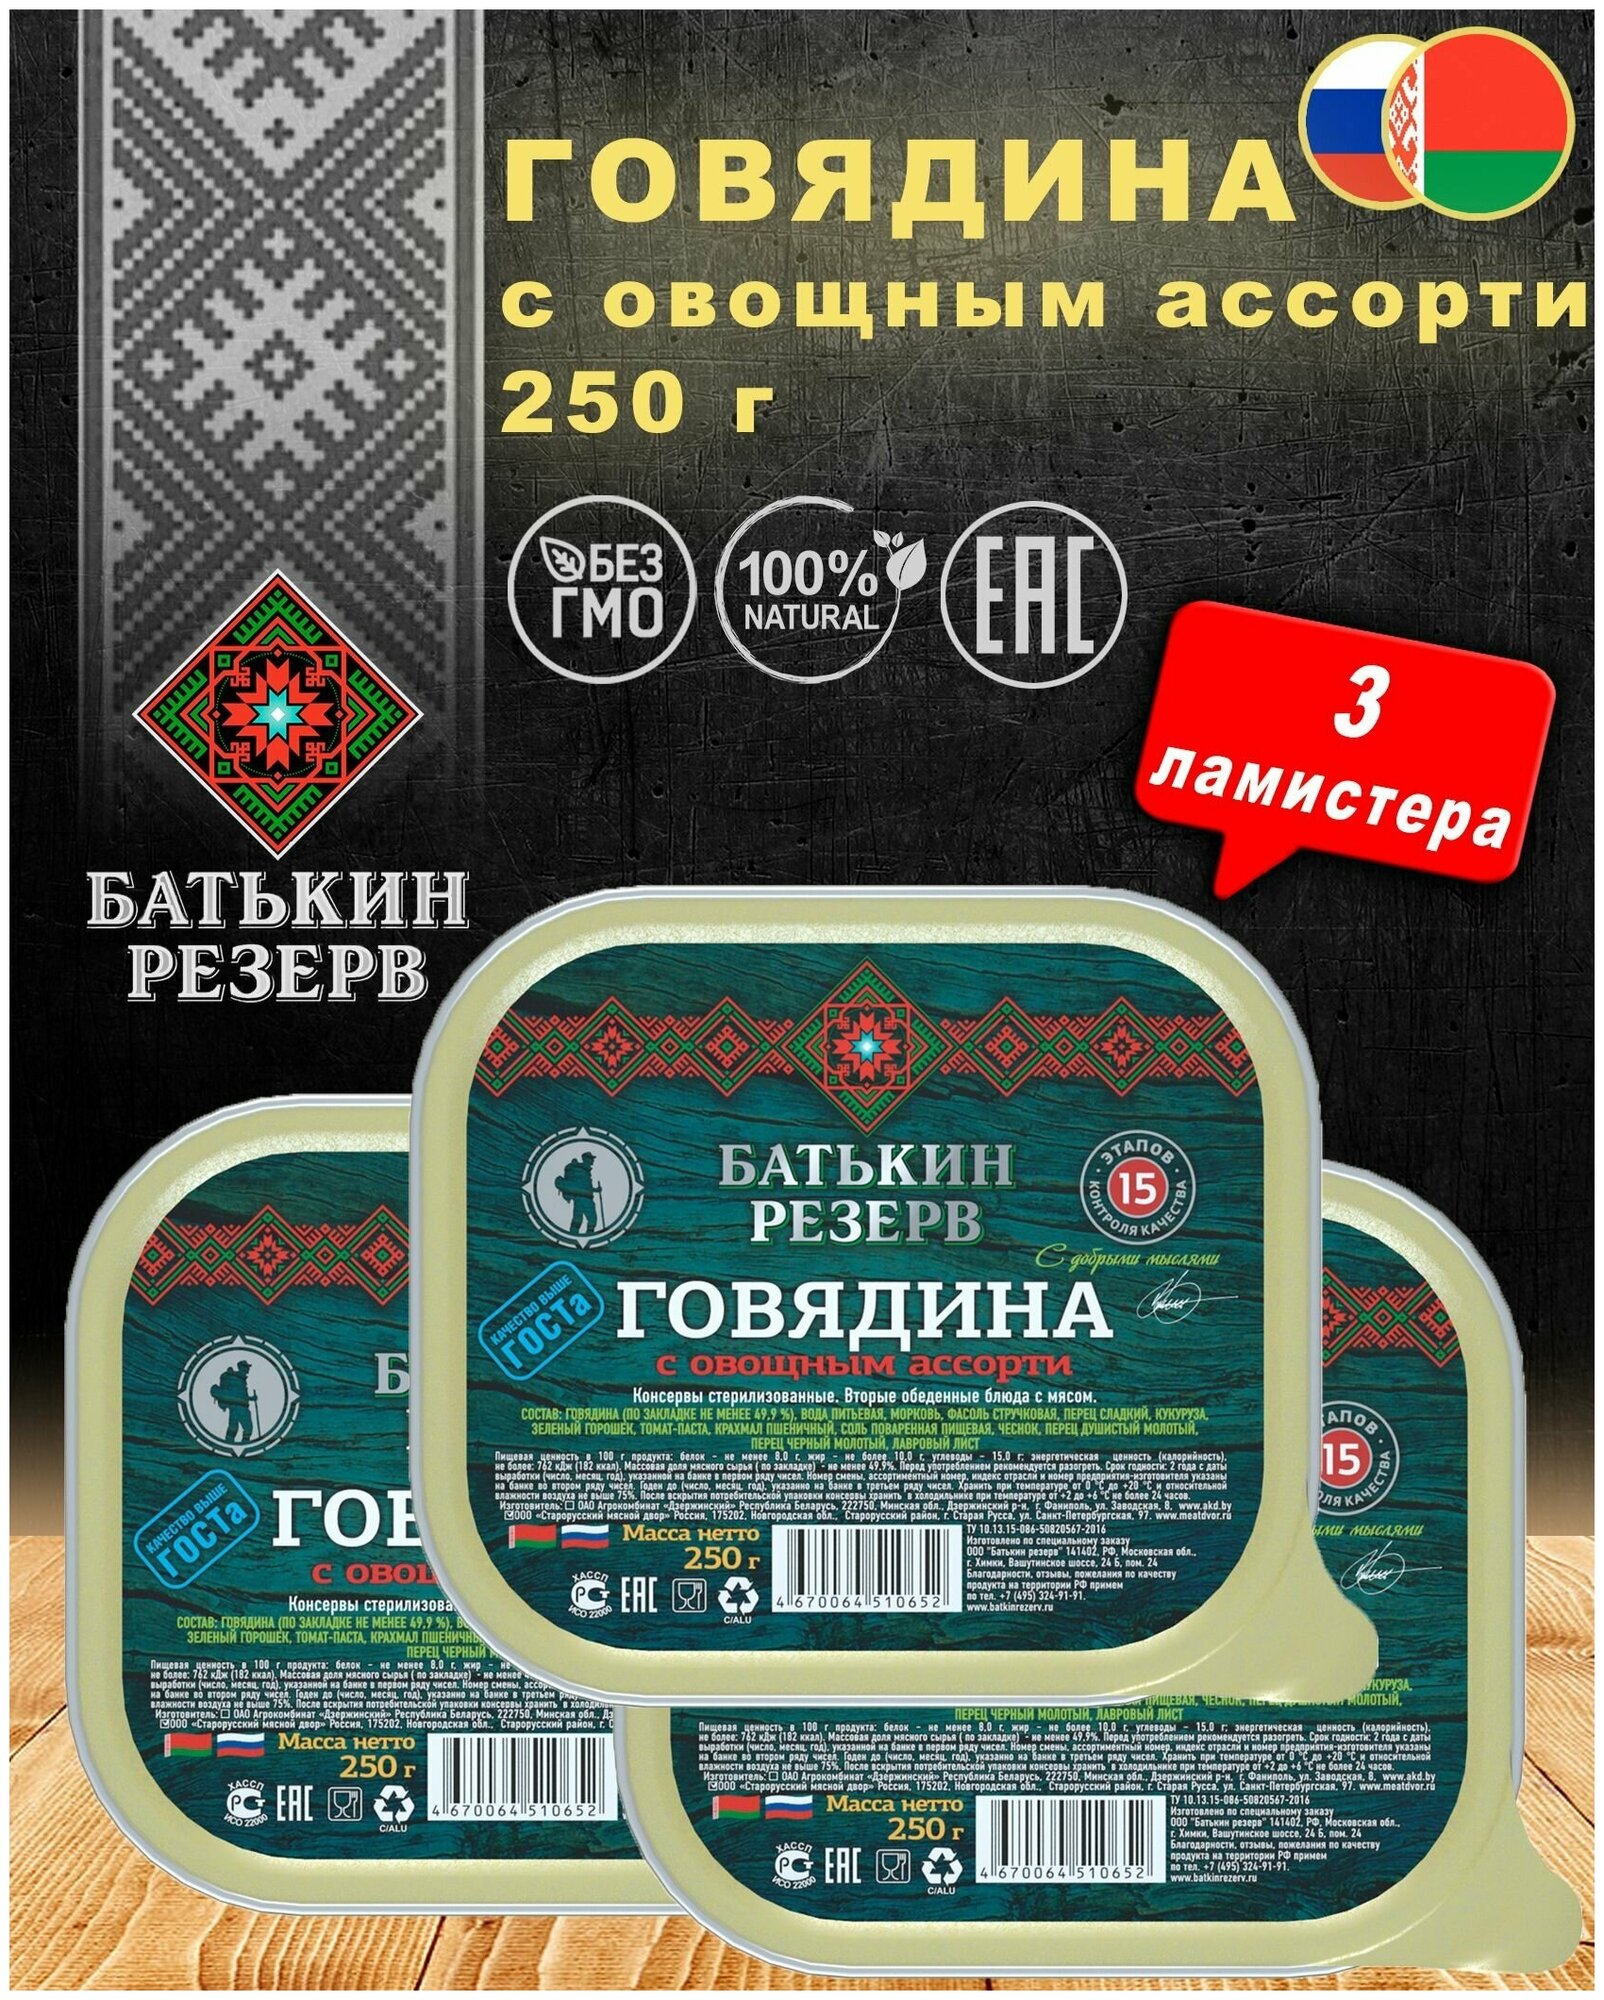 Говядина с овощным ассорти, Батькин резерв, ГОСТ, ламистер, 3 шт. по 250 г